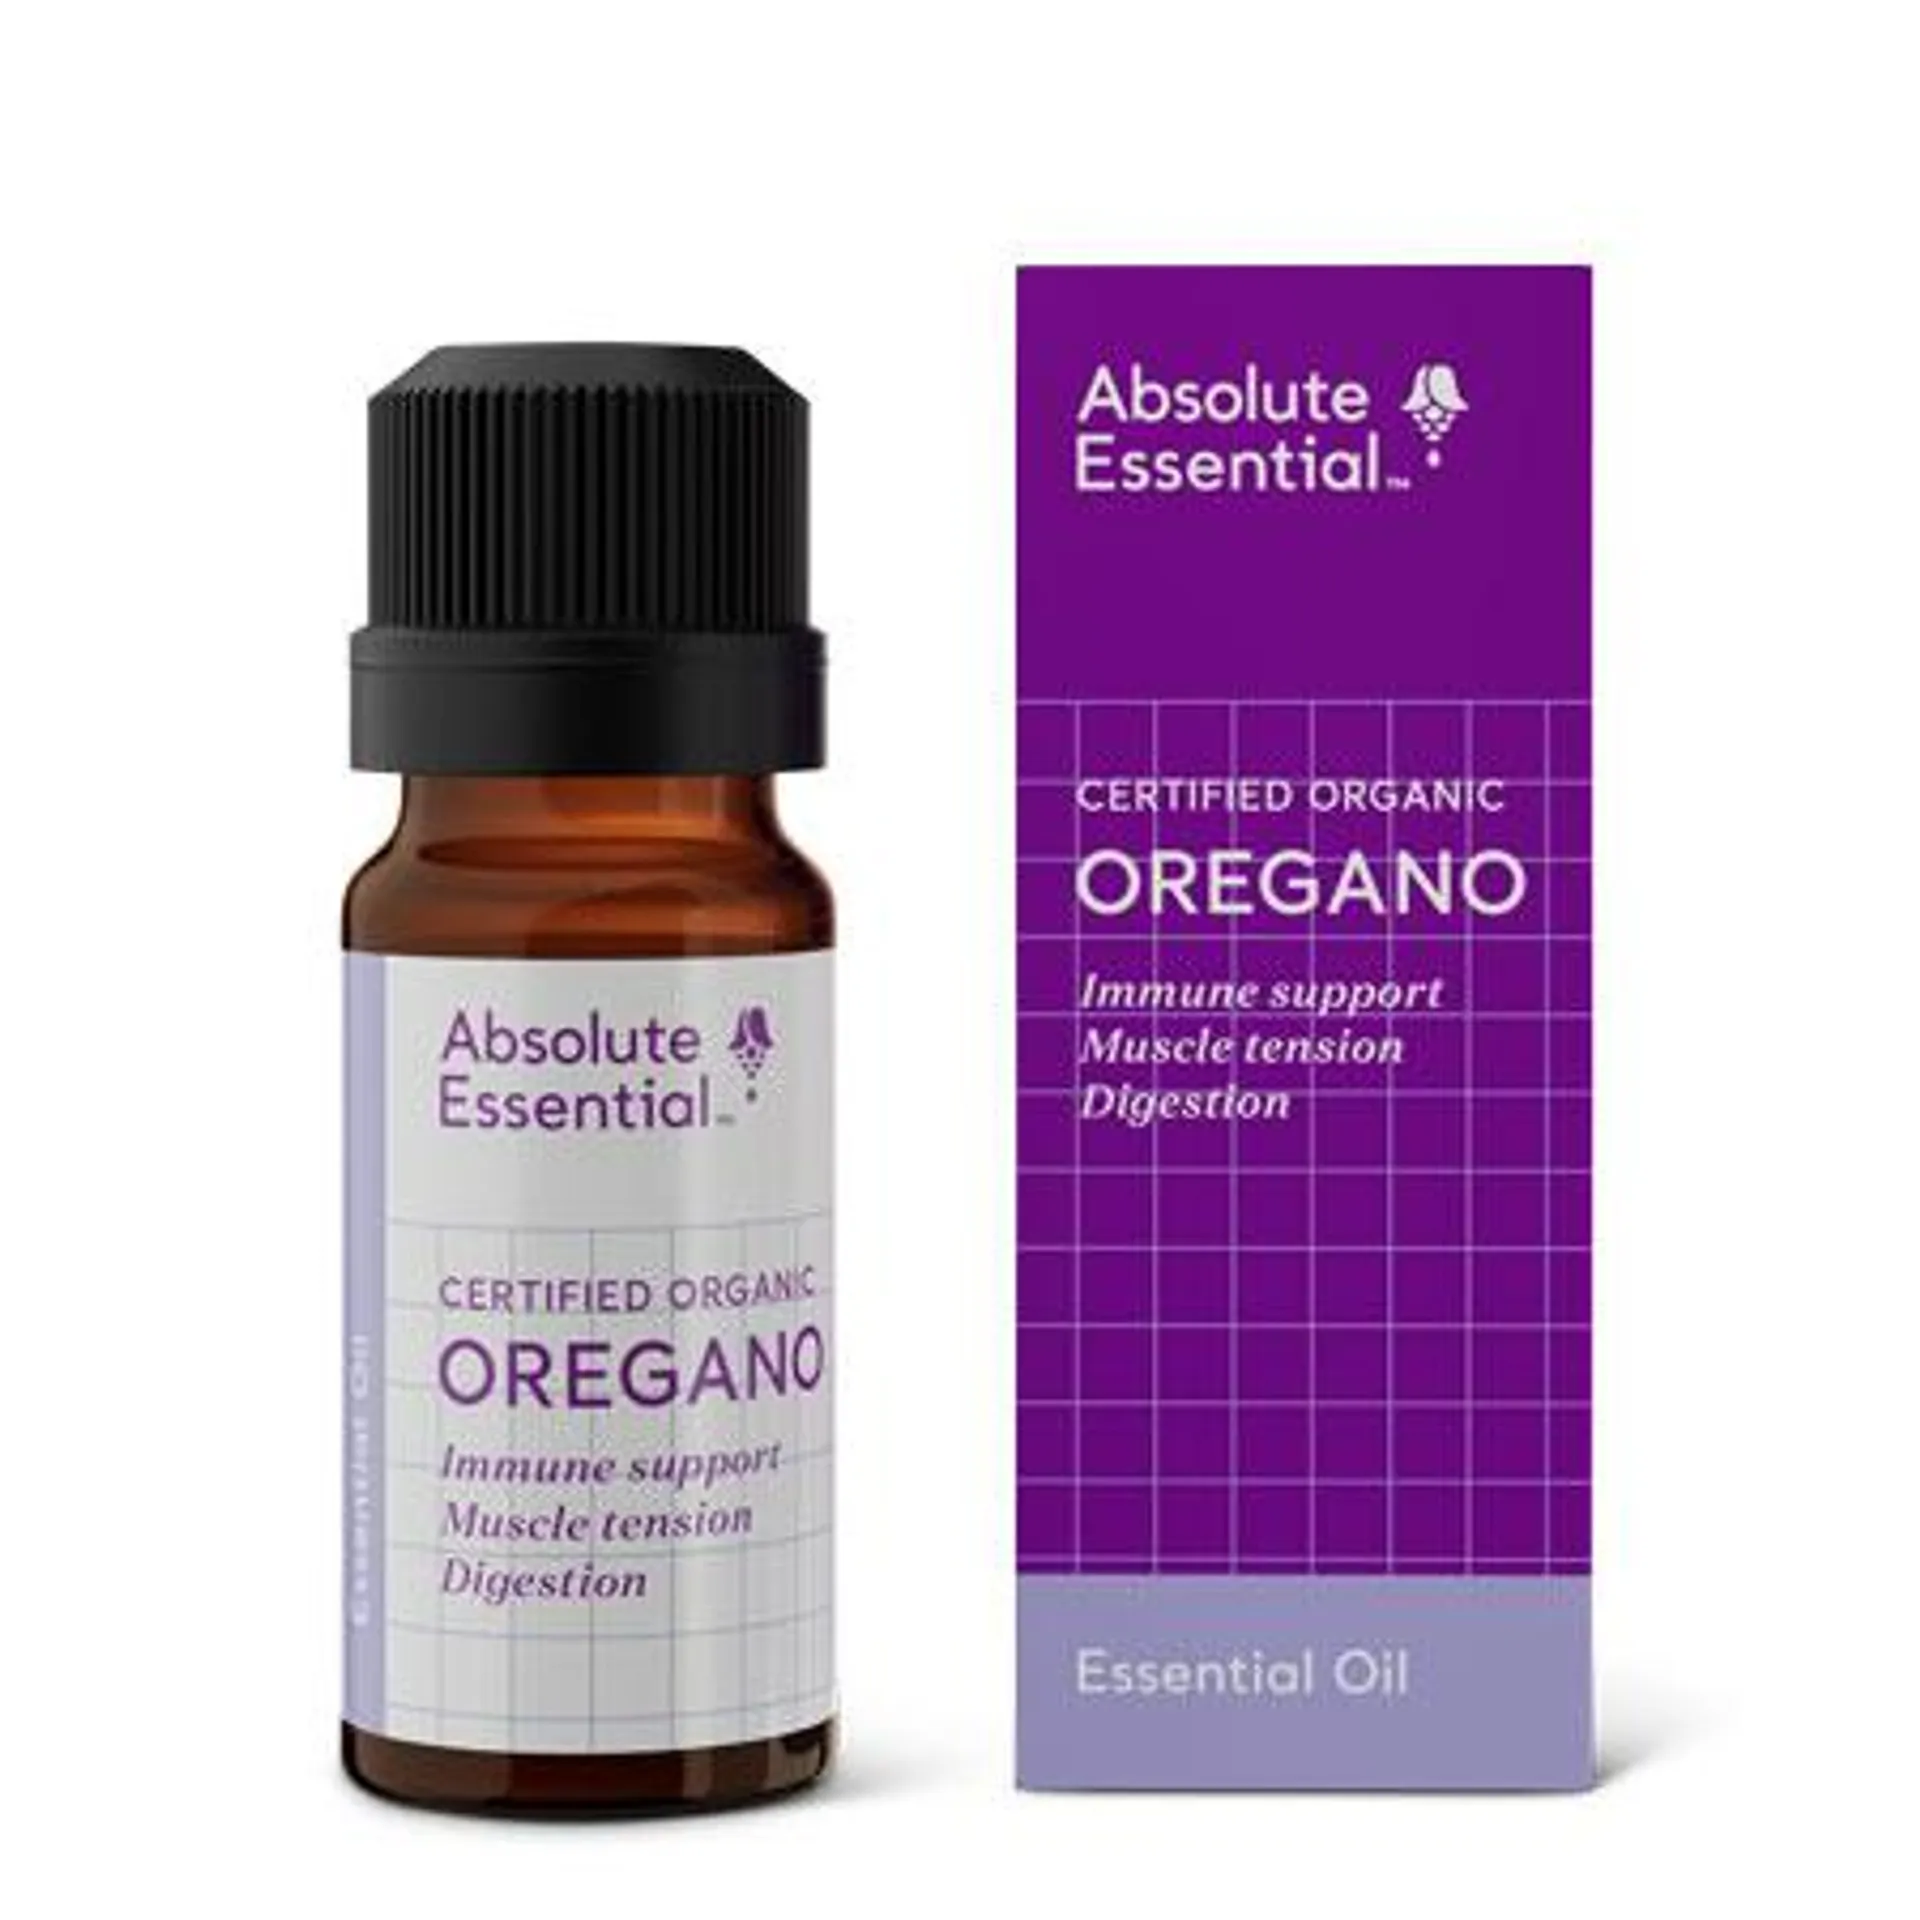 Absolute Essential Oregano Essential Oil